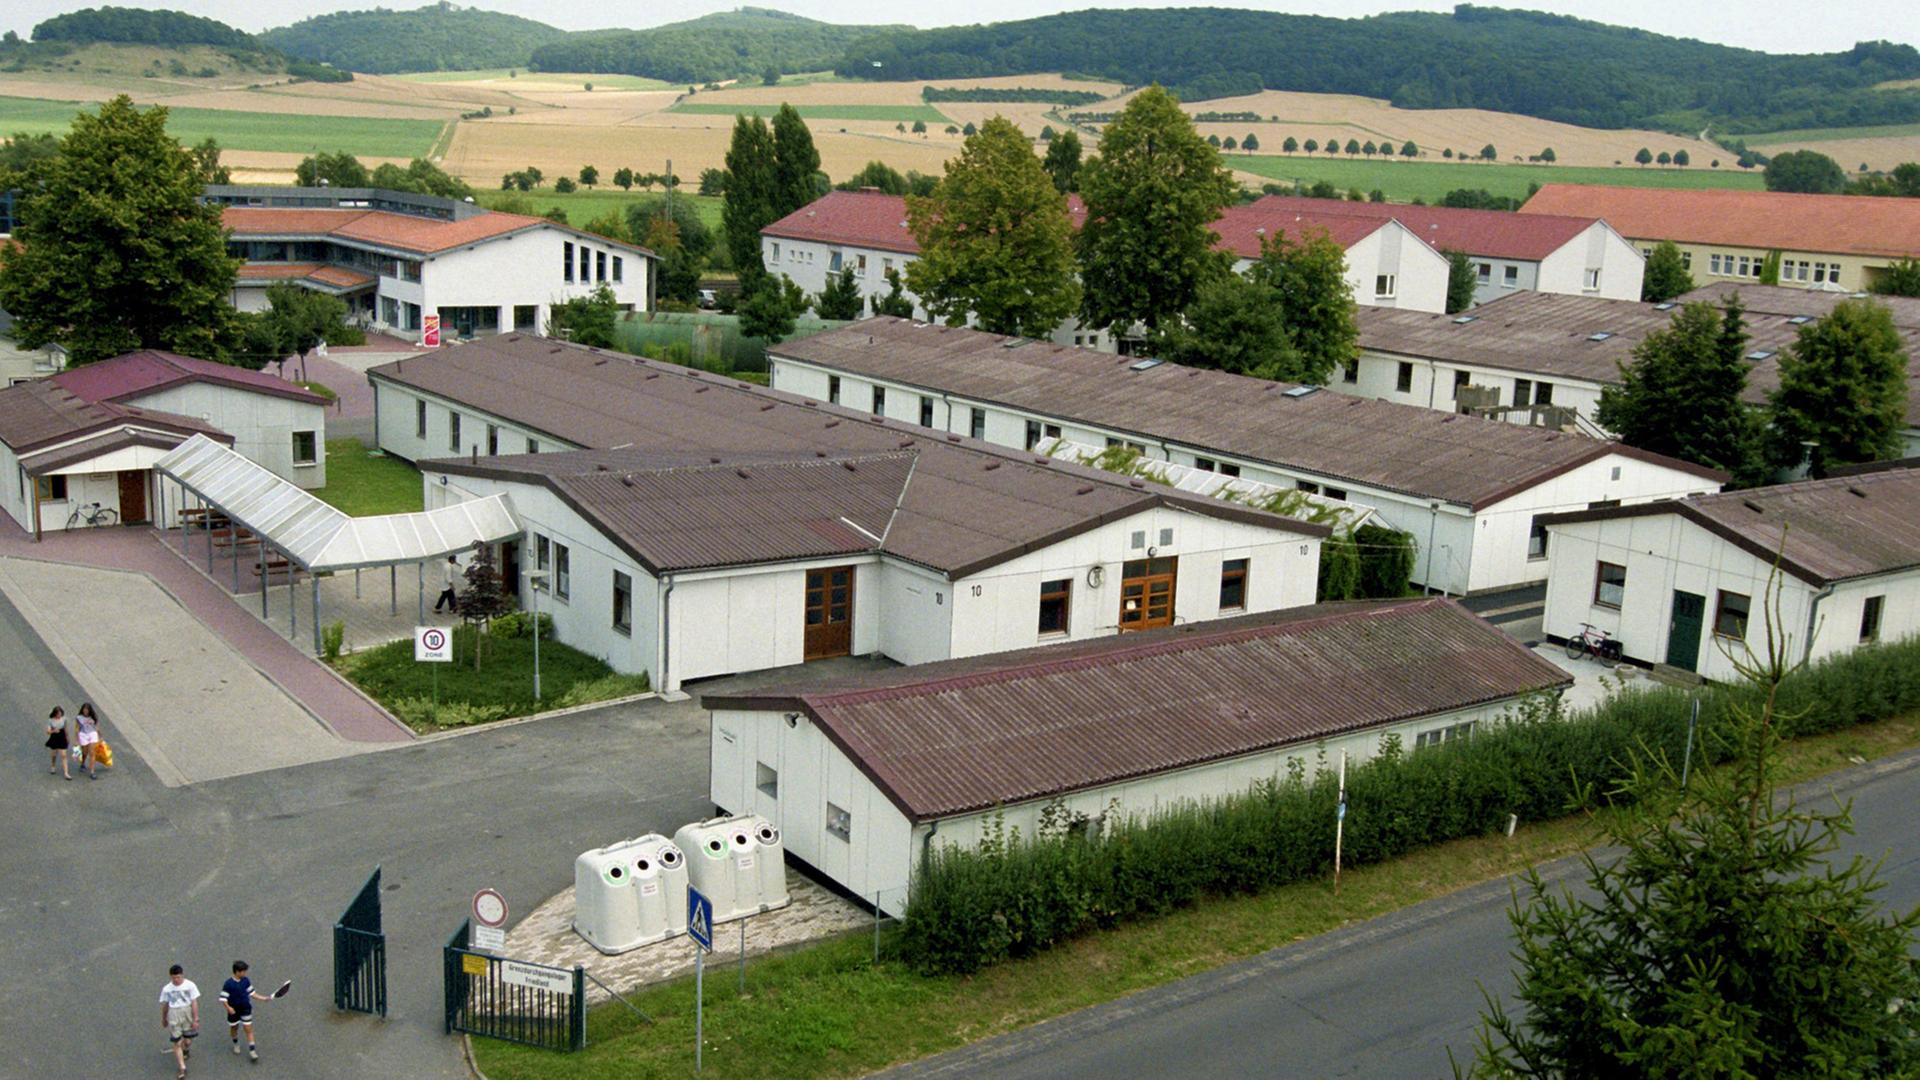 Blick auf das Durchgangslager Friedland bei Göttingen; Aufnahme von 1999: Das Lager bietet Platz für 2000 Personen und ist damals für viele Aussiedler aus Osteuropa die erste Station in ihrer neuen Heimat.